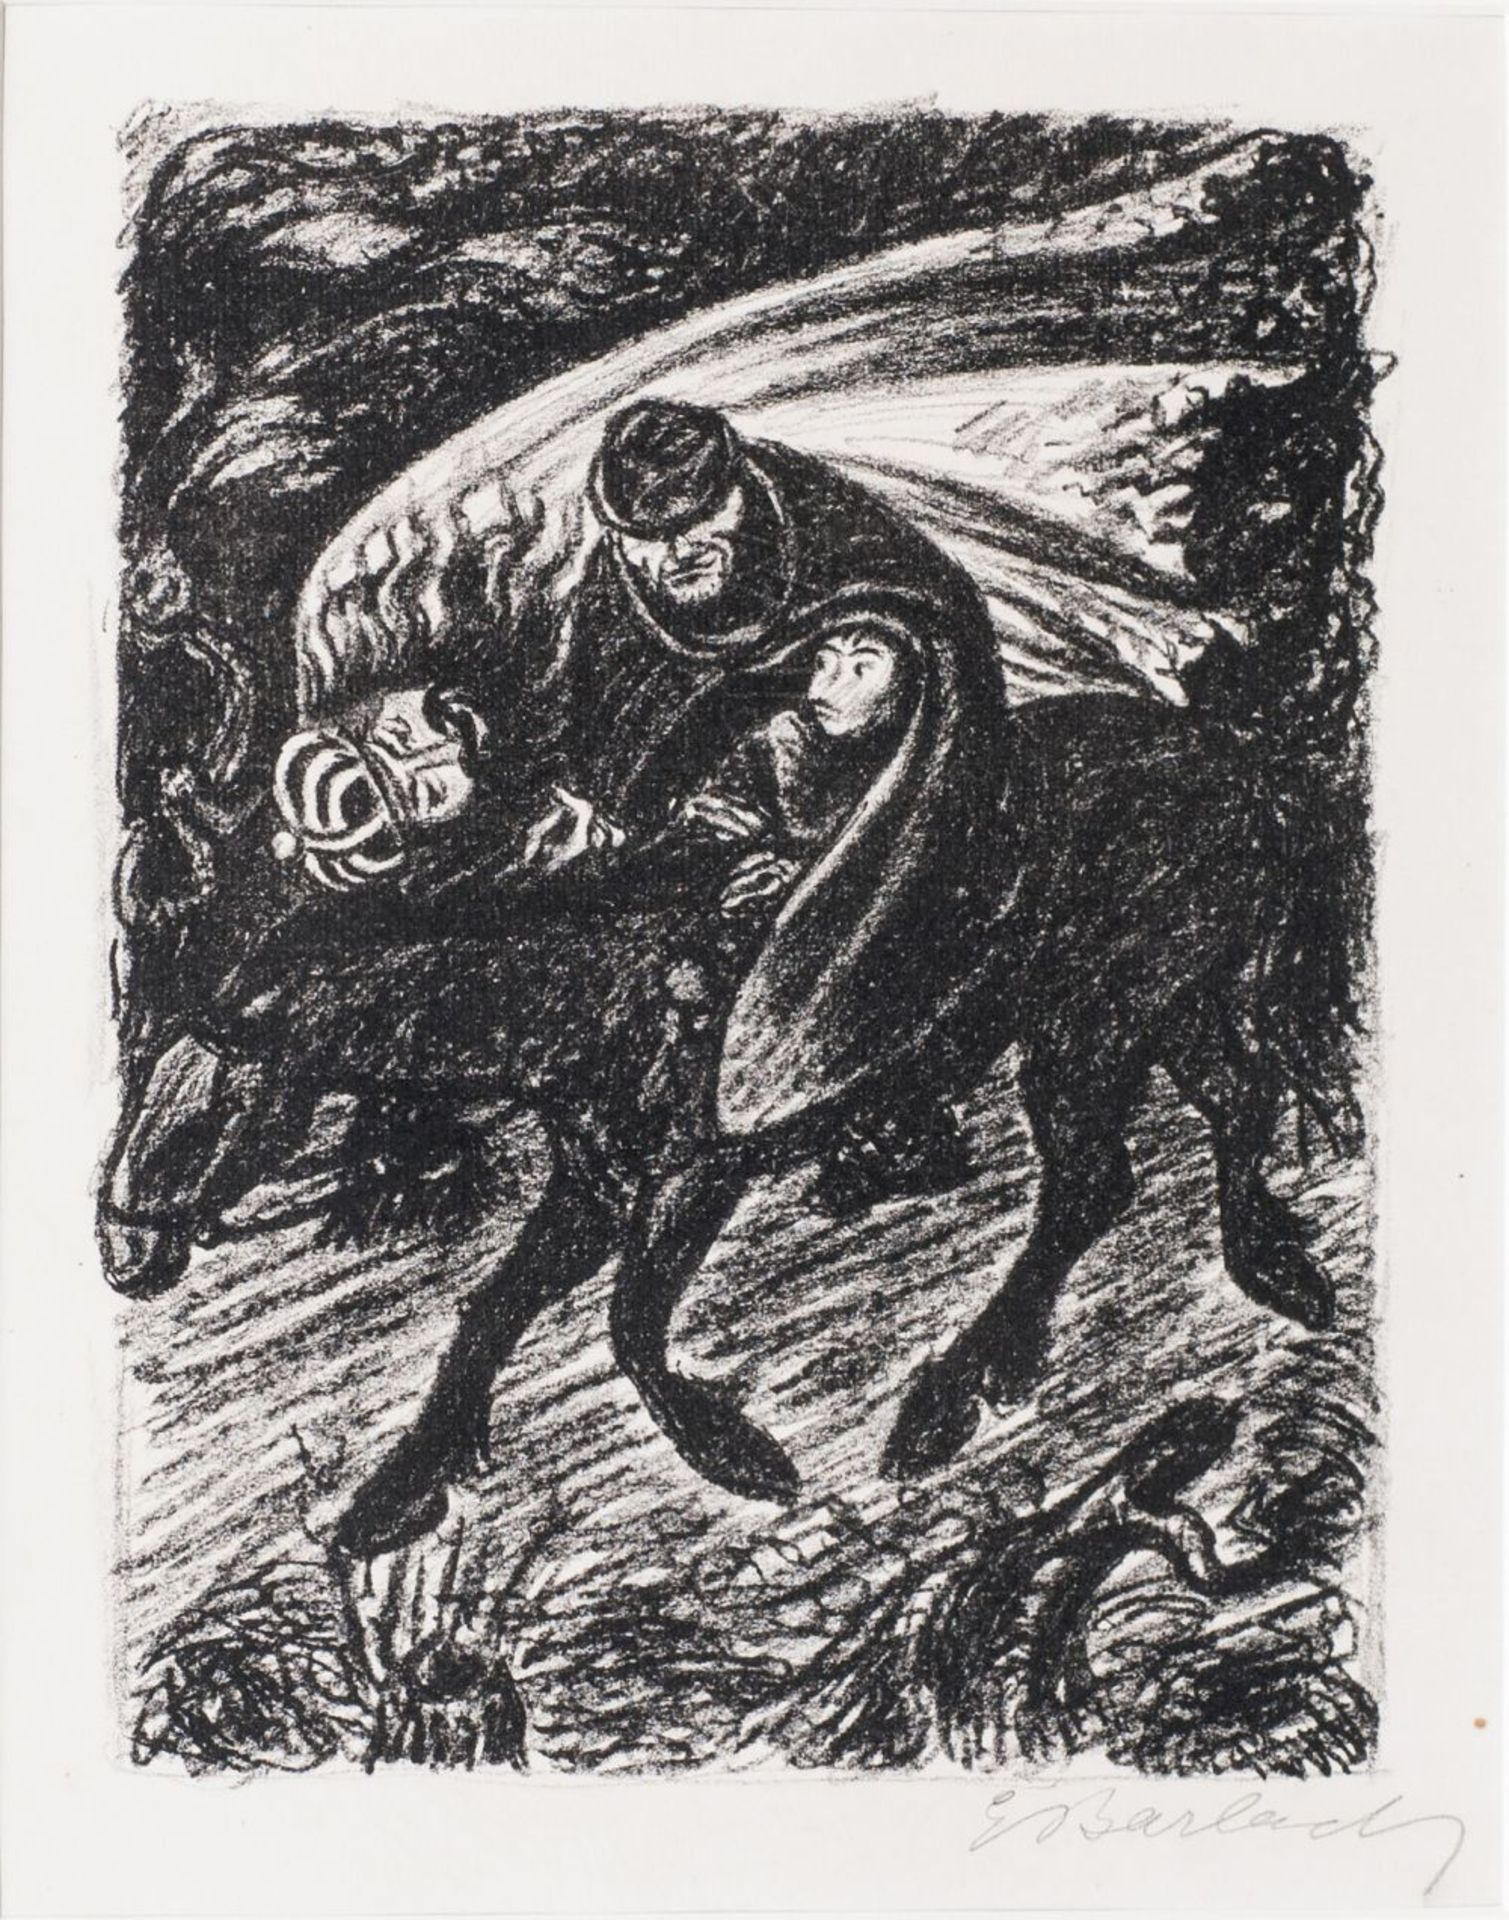 Ernst Barlach (Wedel/Holst. 1870 - Rostock 1938). Erlkönig I. 1924, Lithographie, 25,5 x 20 cm, r.